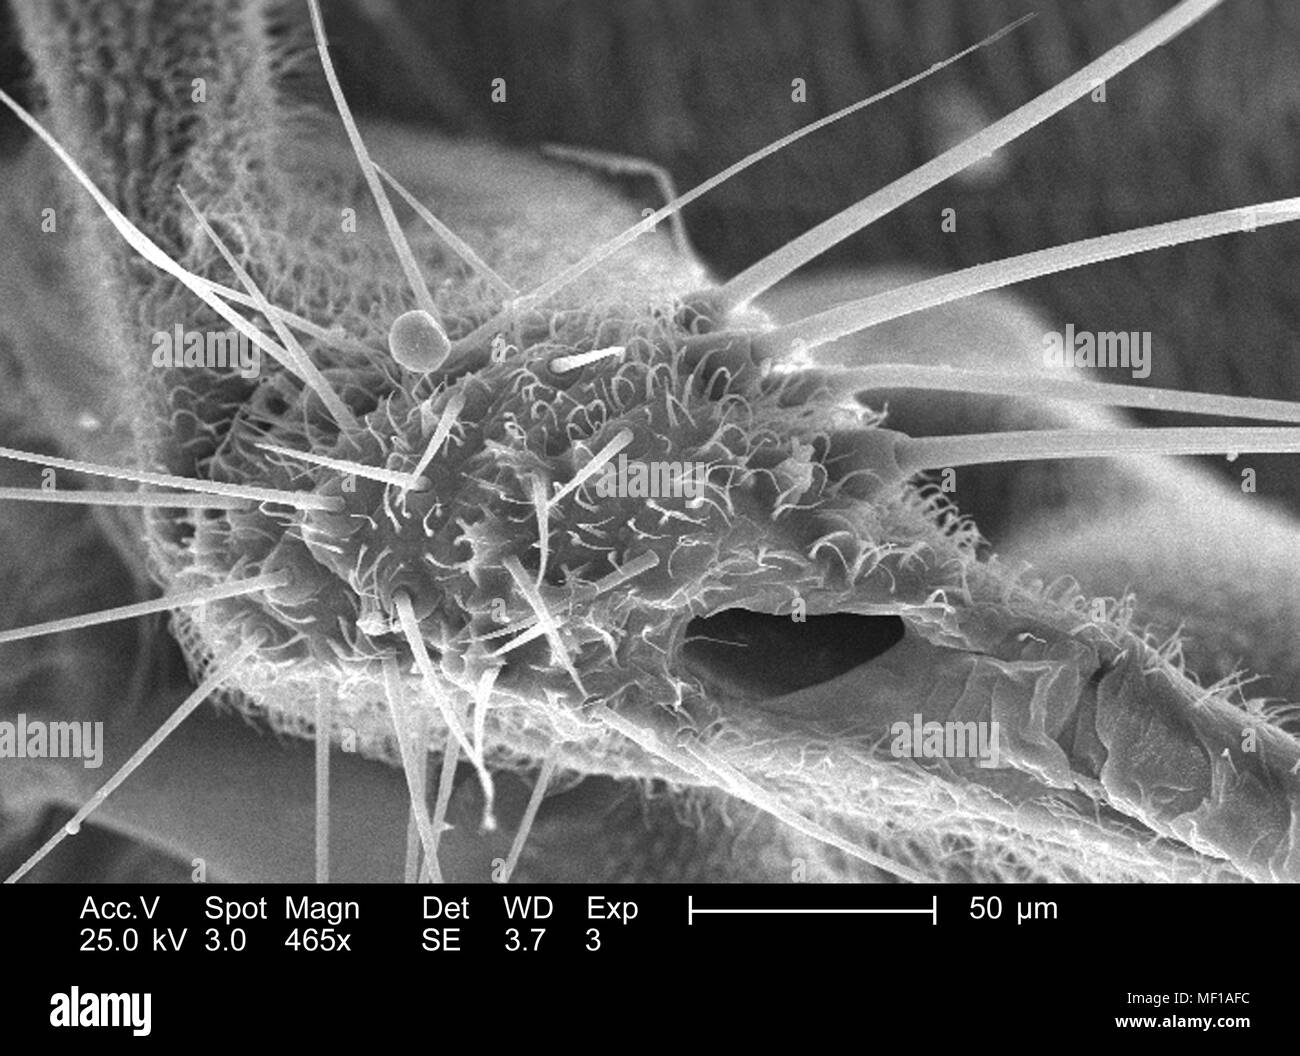 Dettagli morfologiche e i peli sensoriali (Setae) trovati su un parafango attacco di una libellula, raffigurato nella 465x di scansione ingrandita al microscopio elettronico (SEM) immagine, 2005. Immagine cortesia di centri per il controllo delle malattie (CDC) / Janice Haney Carr, Connie fiori. () Foto Stock